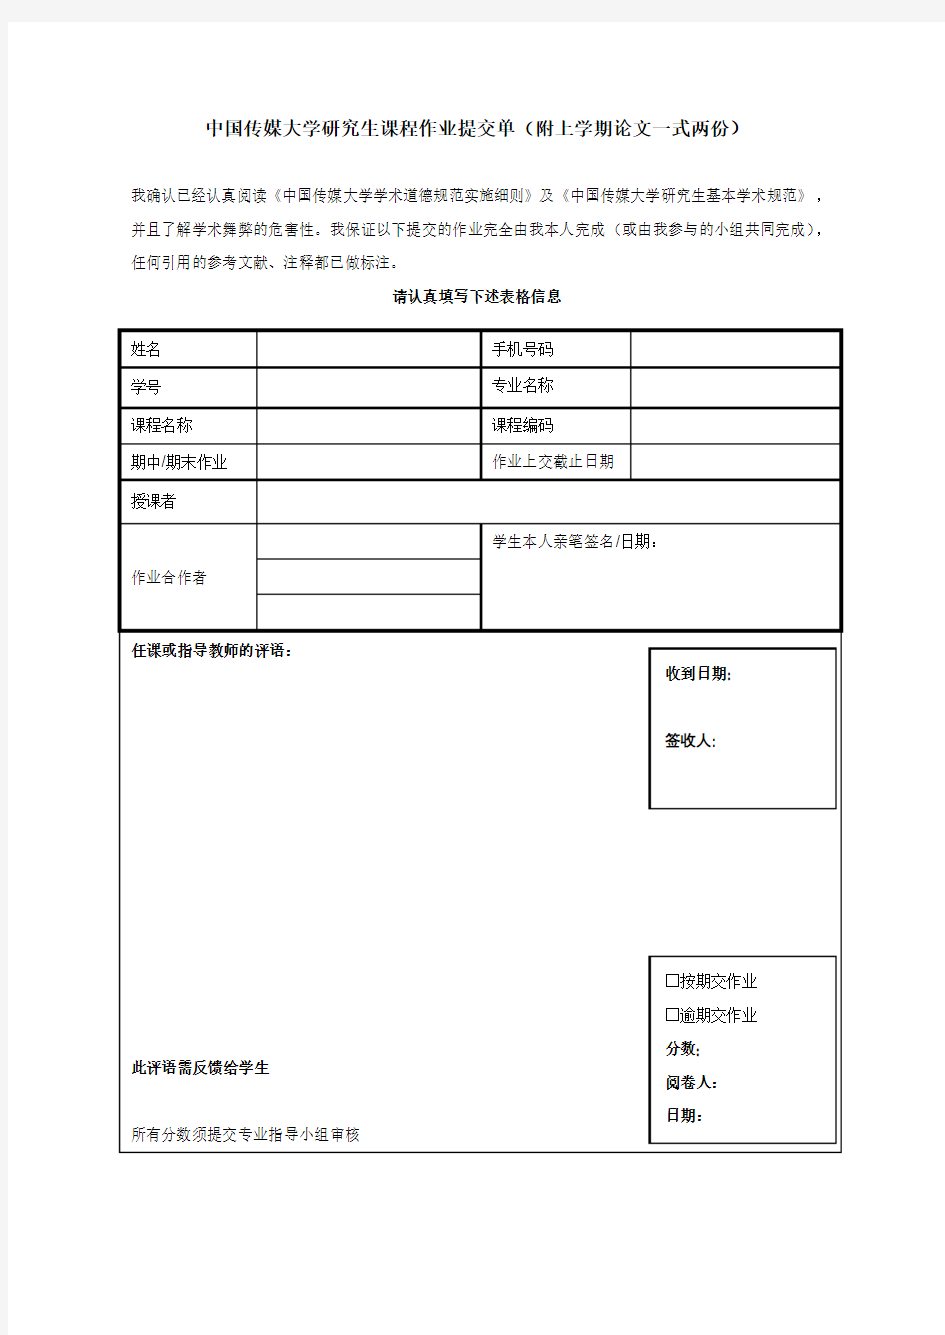 中国传媒大学研究生课程作业提交单(附上学期论文一式两份)